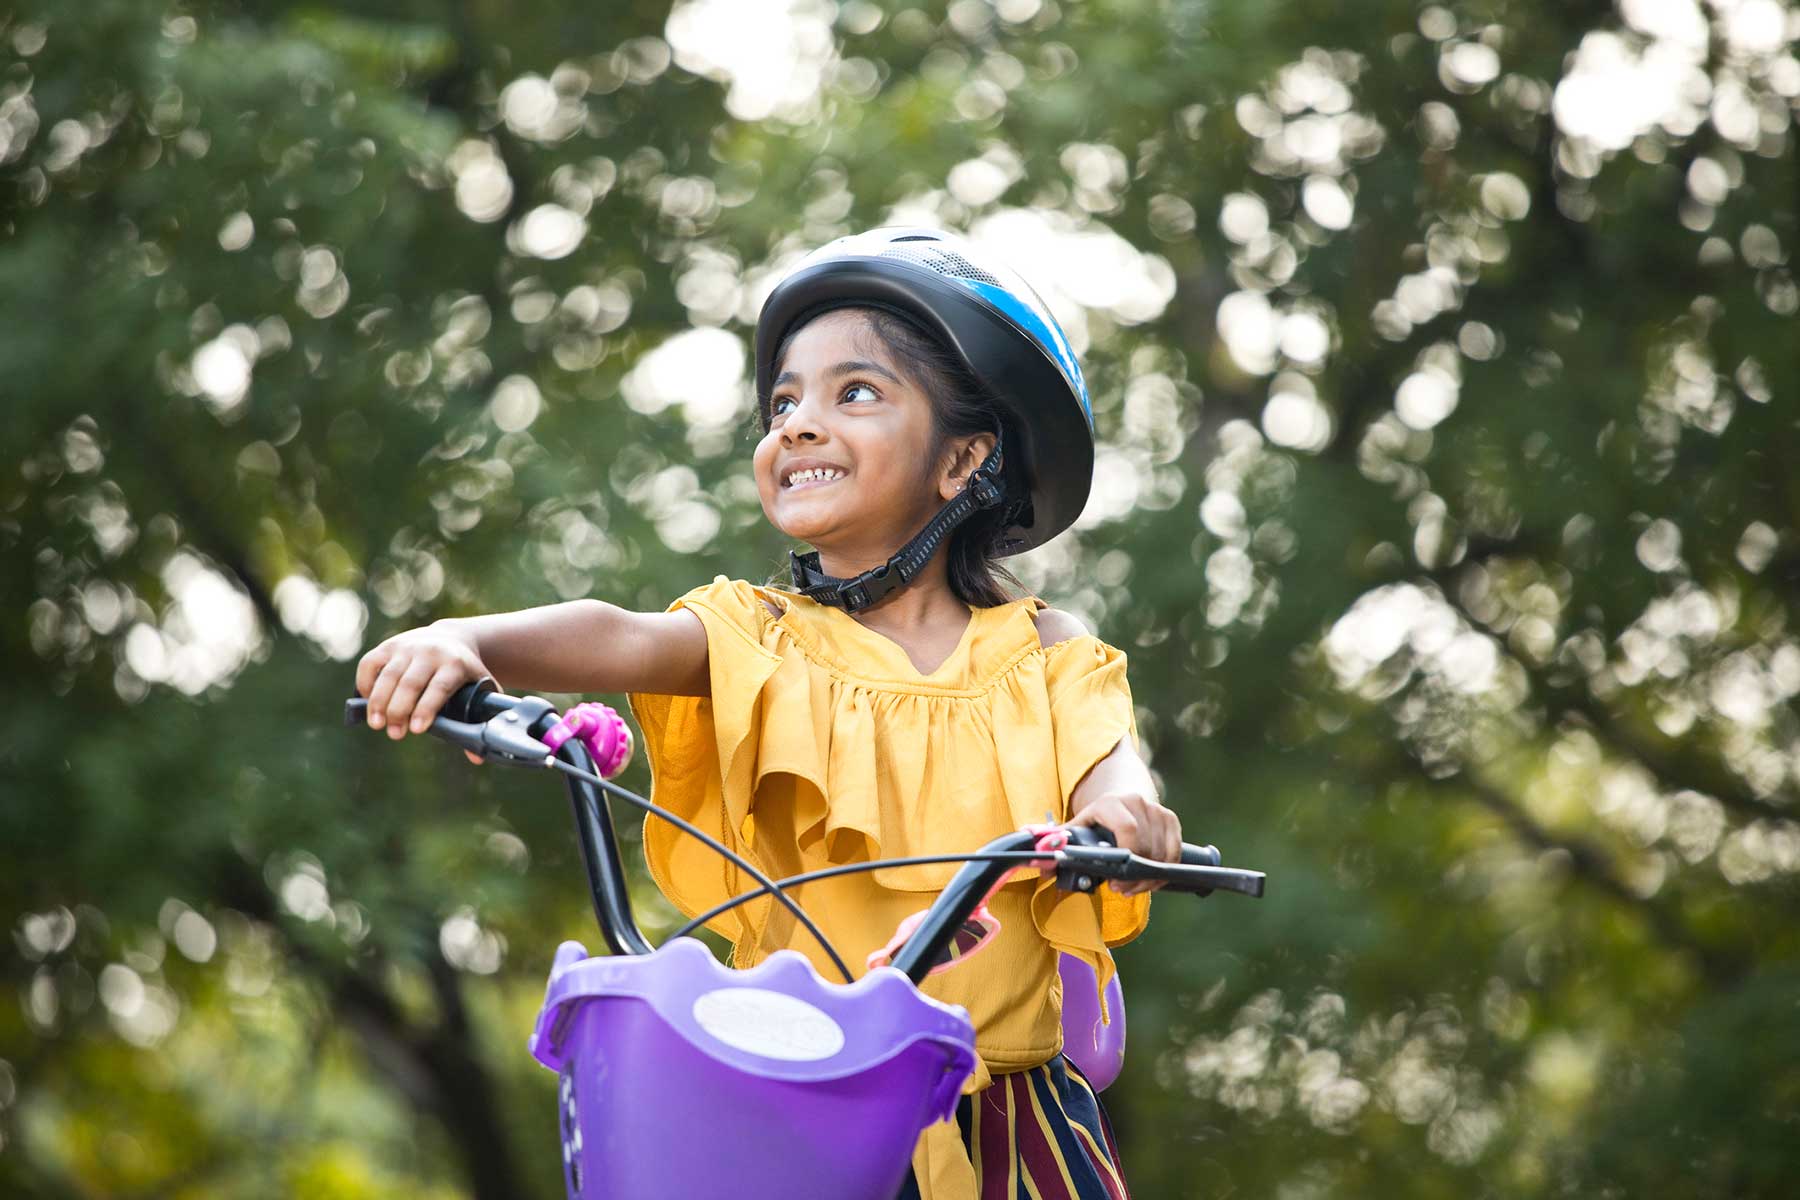 Little girl riding bike